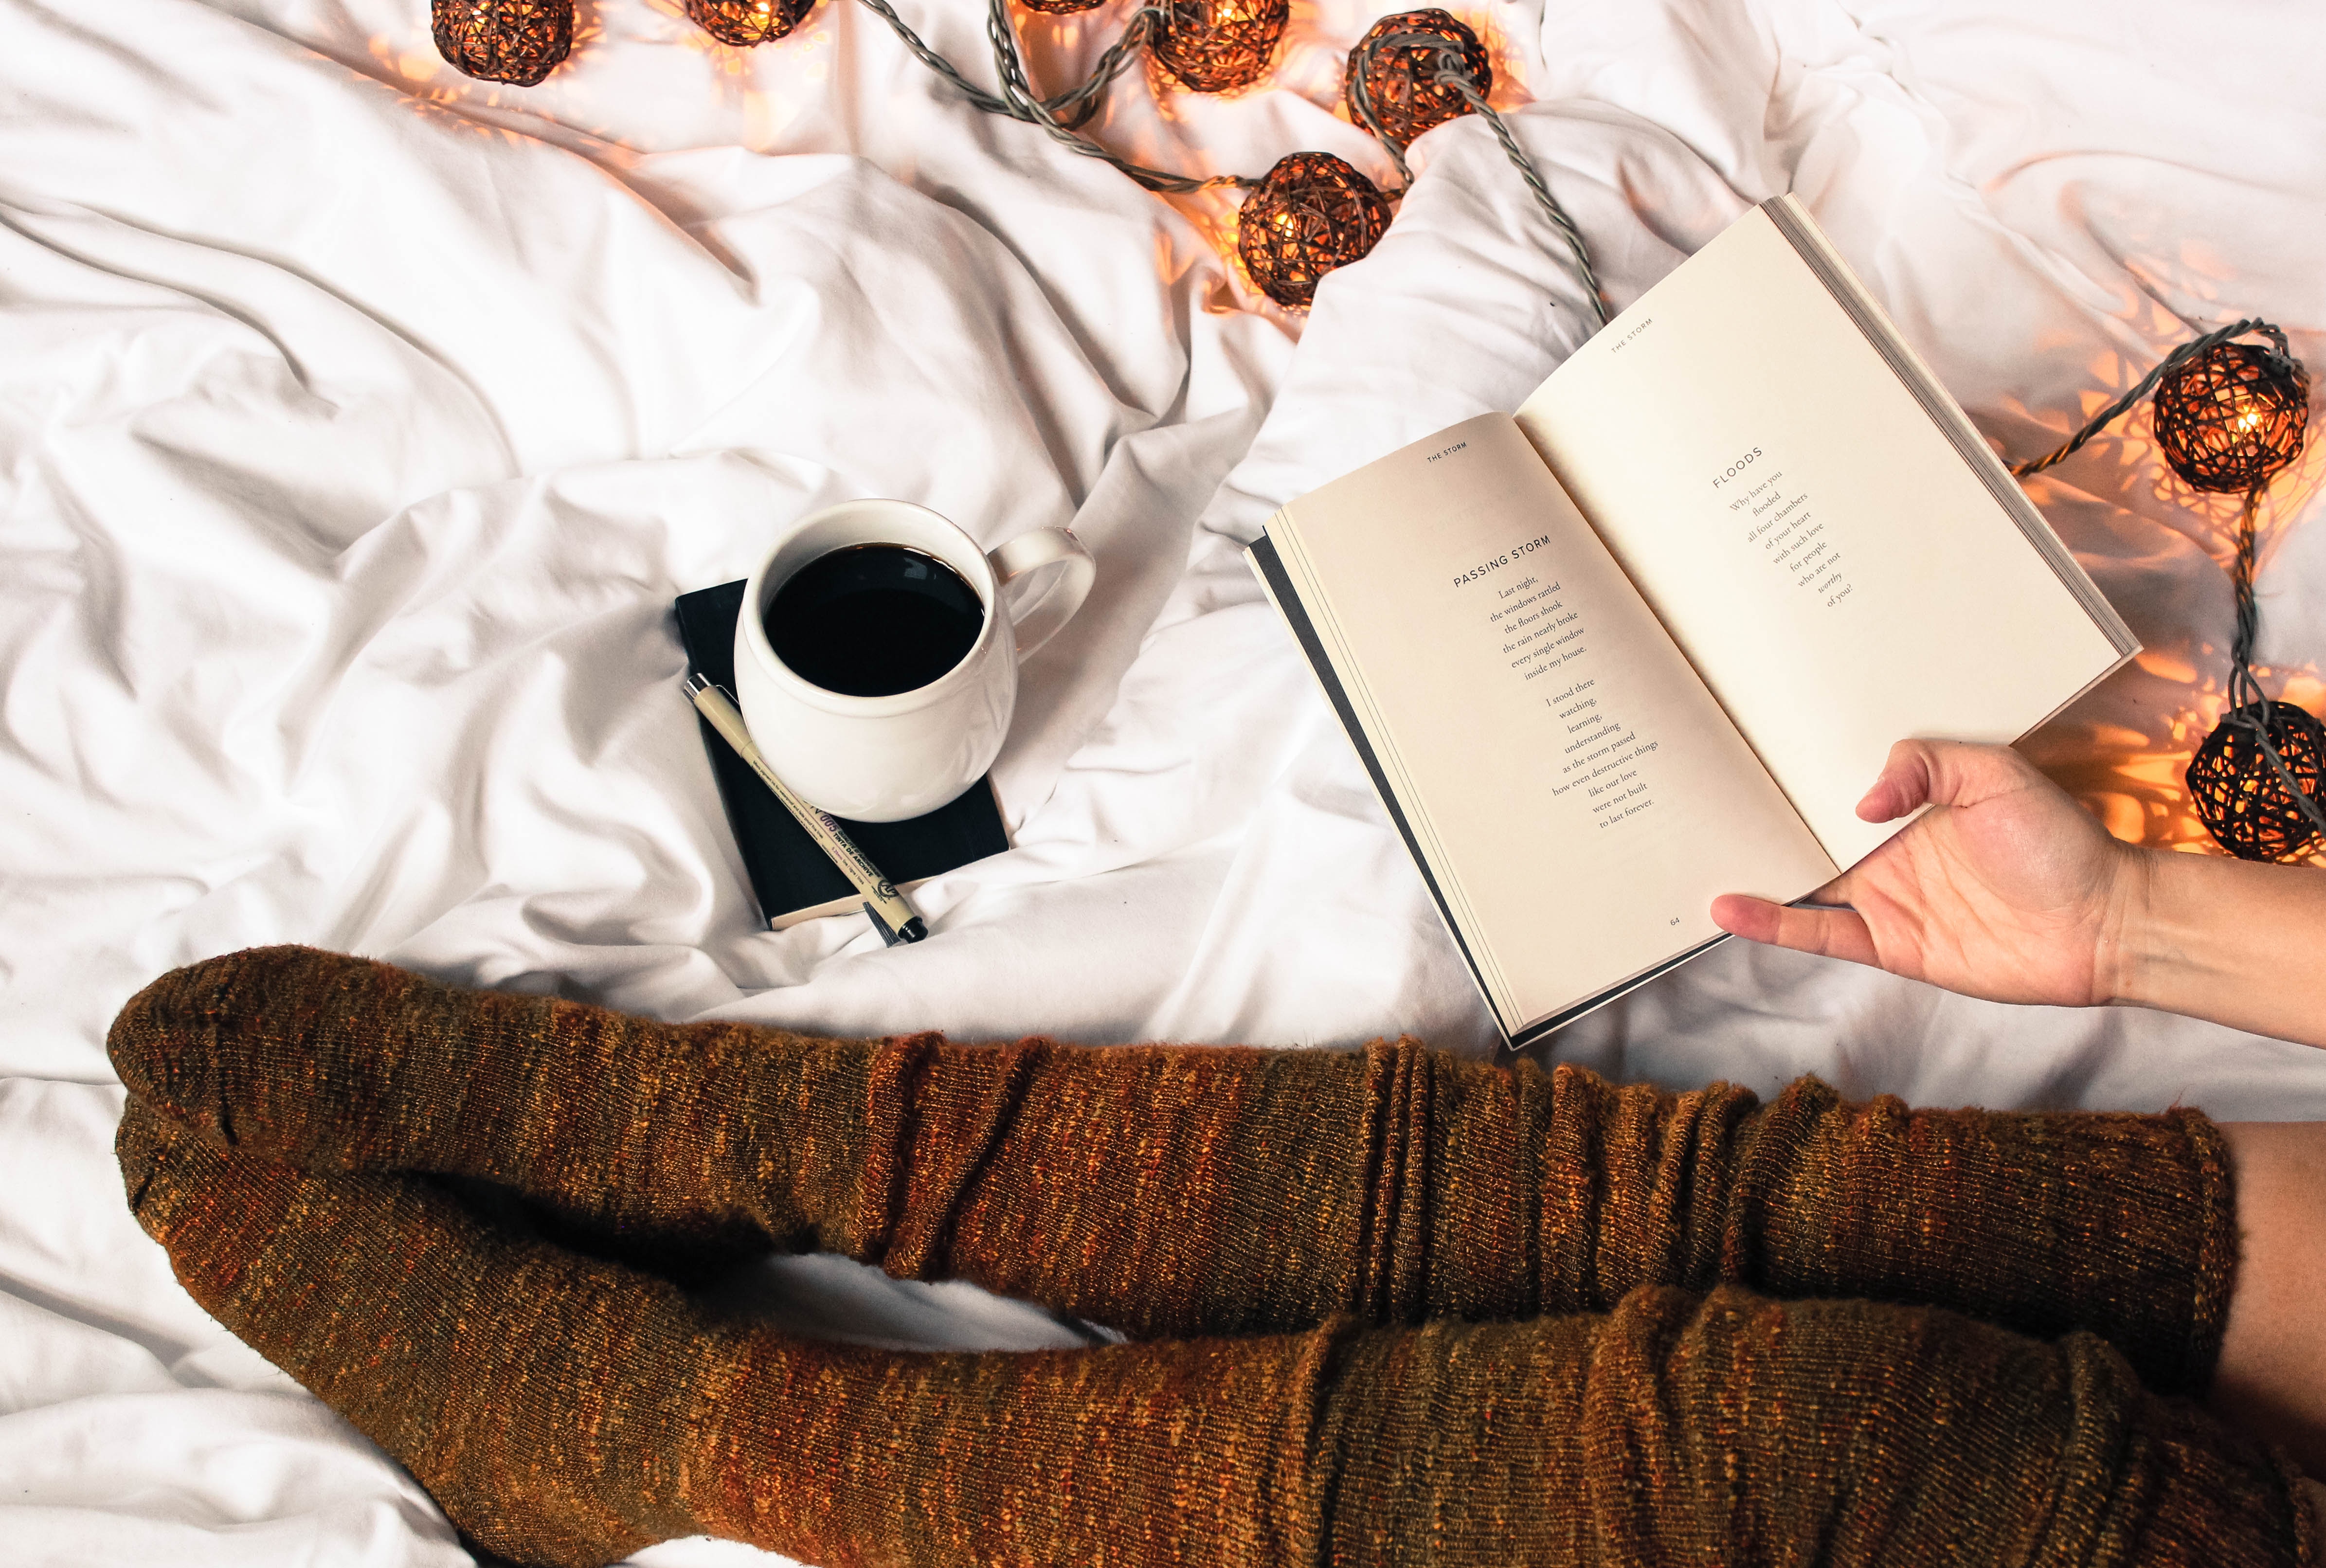 Łóżko na którym siedzi kobieta pijąca kawę i czytająca książke